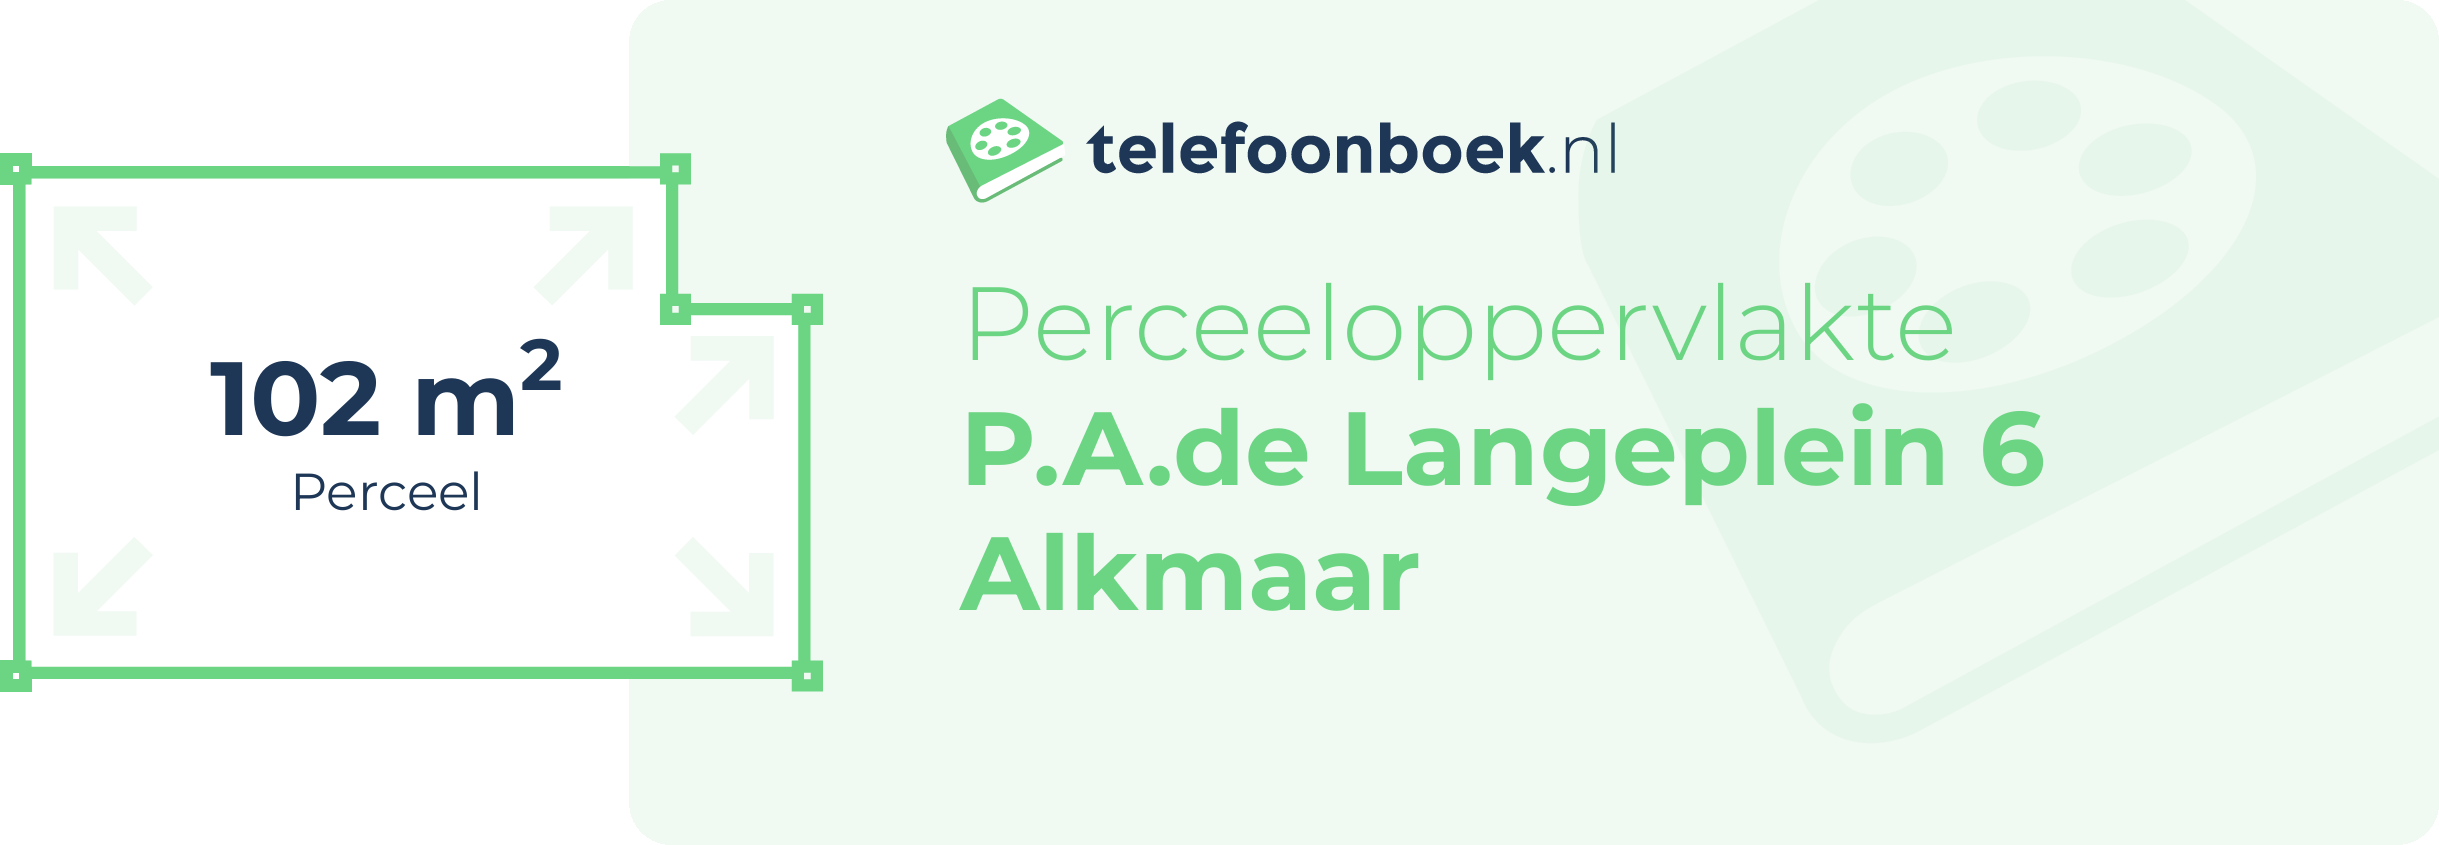 Perceeloppervlakte P.A.de Langeplein 6 Alkmaar